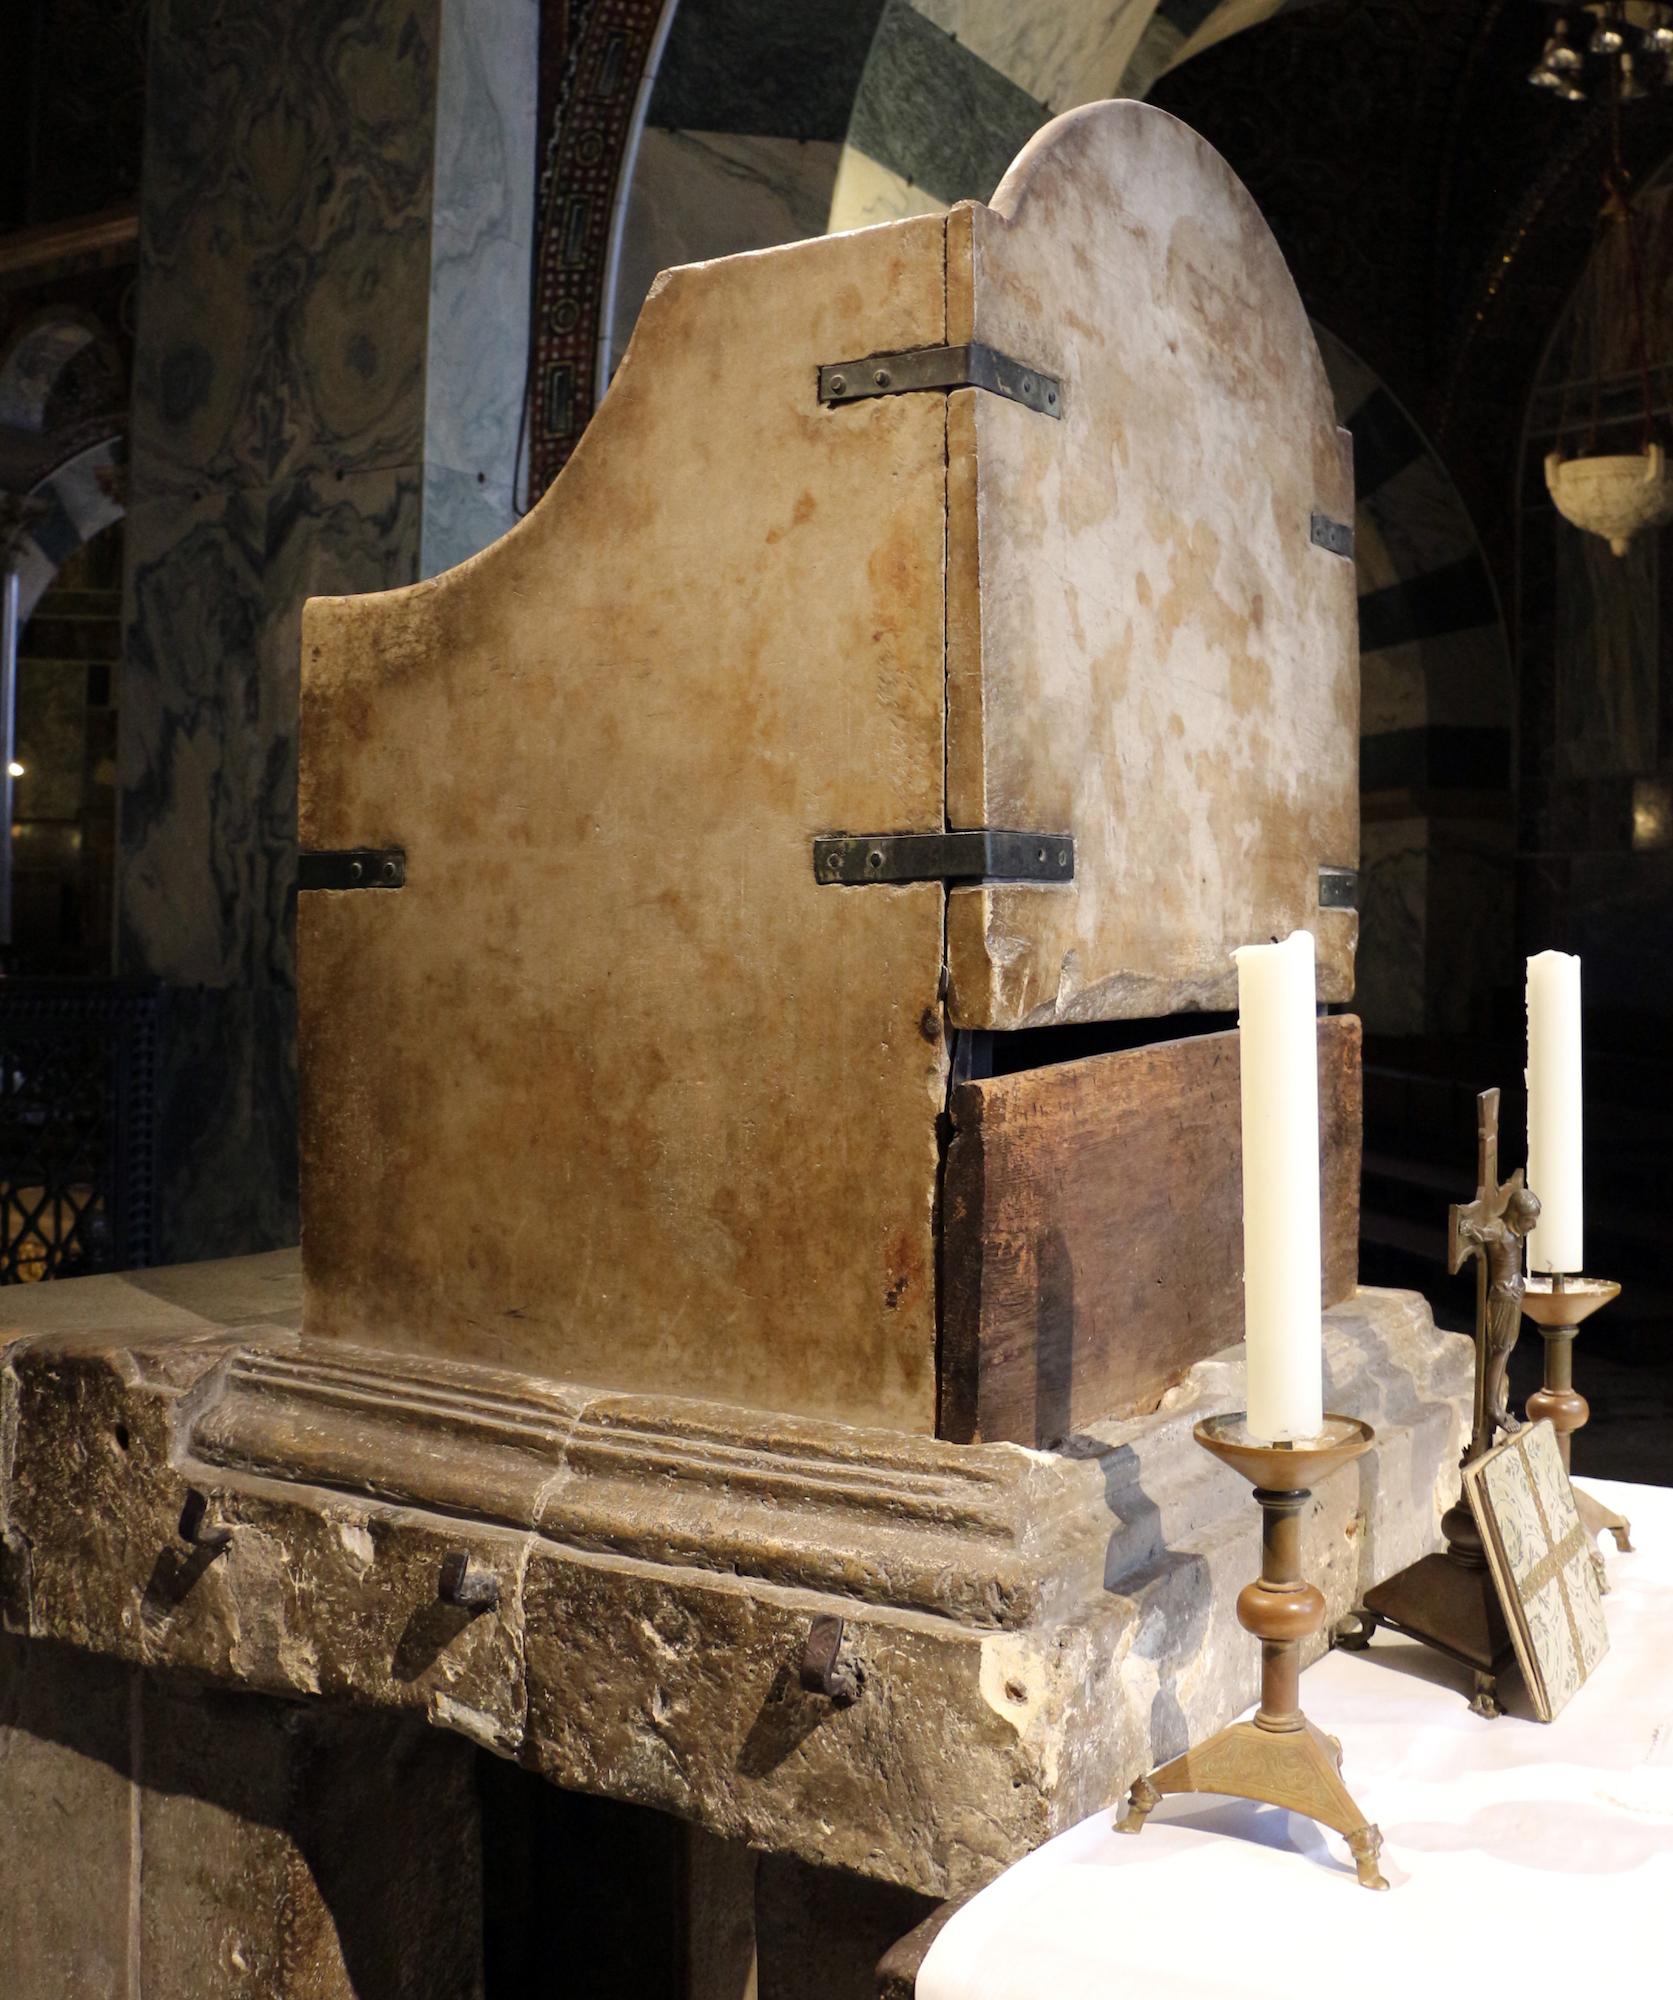 Sollte ein Königsthron nicht etwas mehr Prunk zeigen? Stattdessen zeichnen das Objekt im Aachener Dom grob zugehauener Marmor, schlecht verarbeitete Klammern und schlichte Hölzer aus.